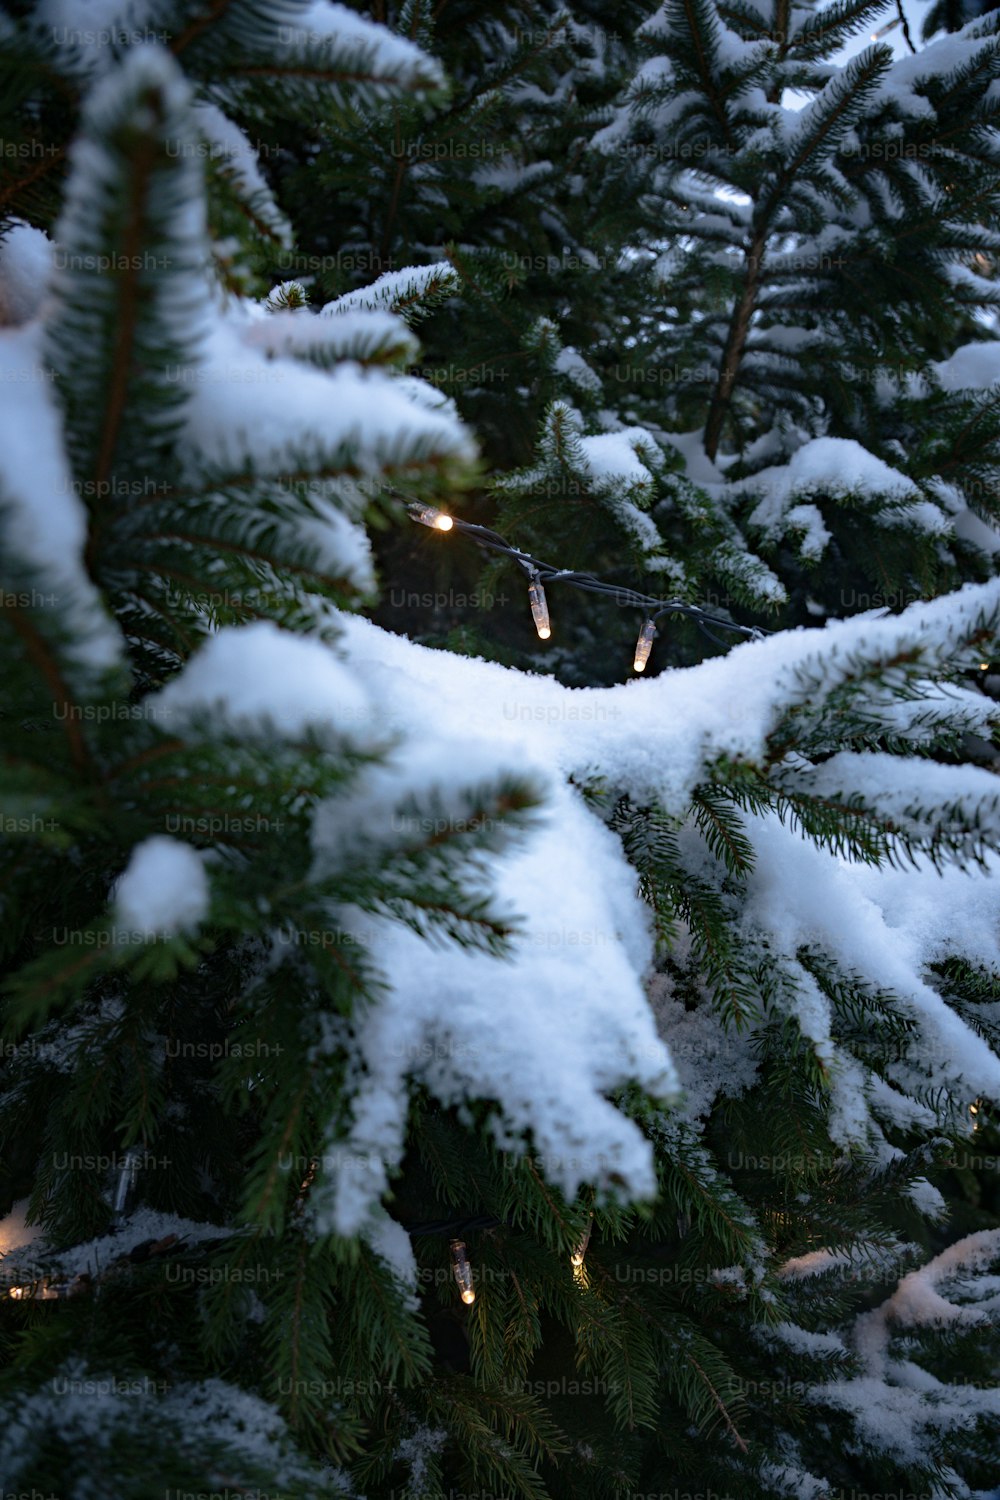 Un primer plano de un pino cubierto de nieve